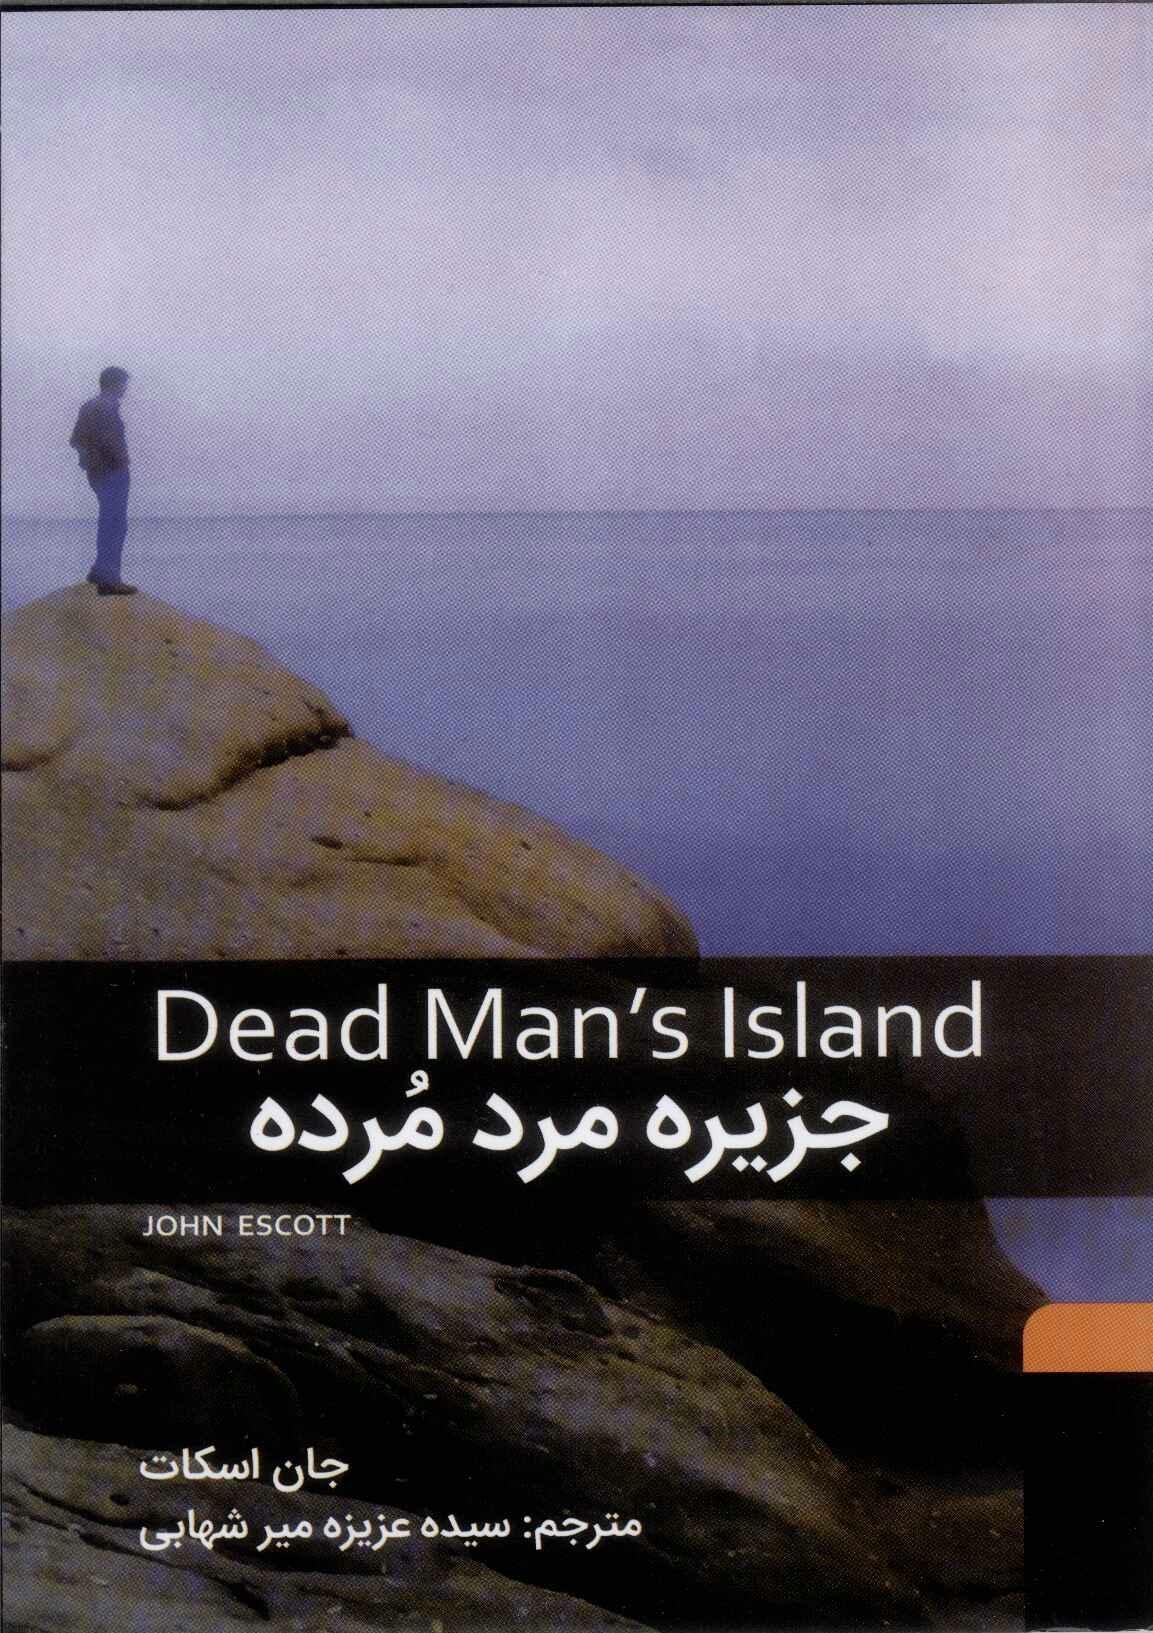  کتاب جزیره مرد مرده